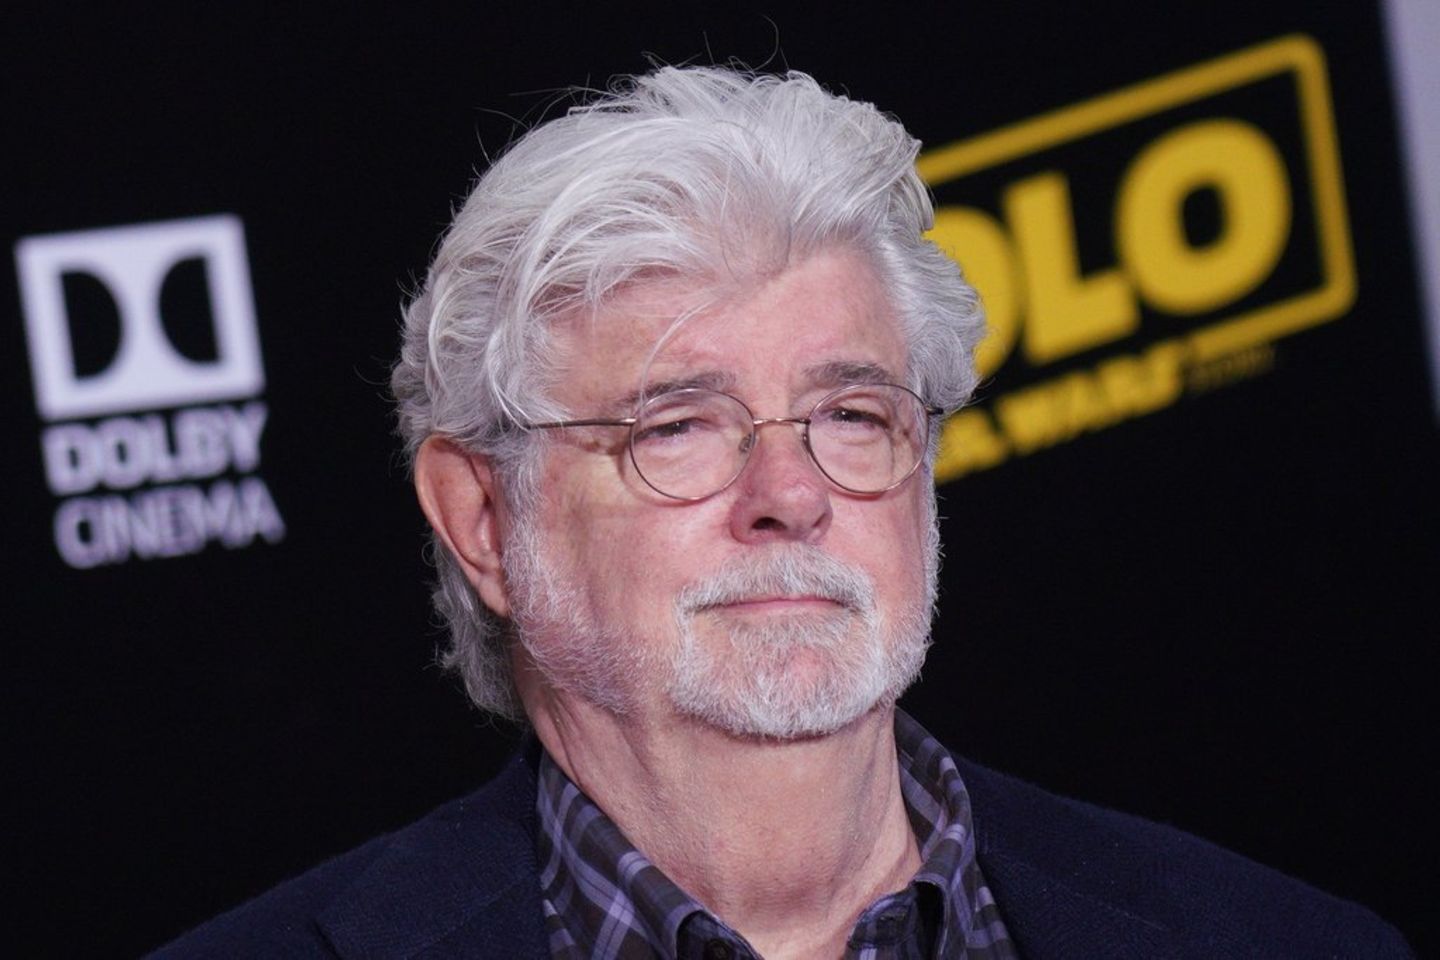 George Lucas entpuppte sich neben seiner Tätigkeit als Filmemacher als ebenso einfallsreicher Geschäftsmann.